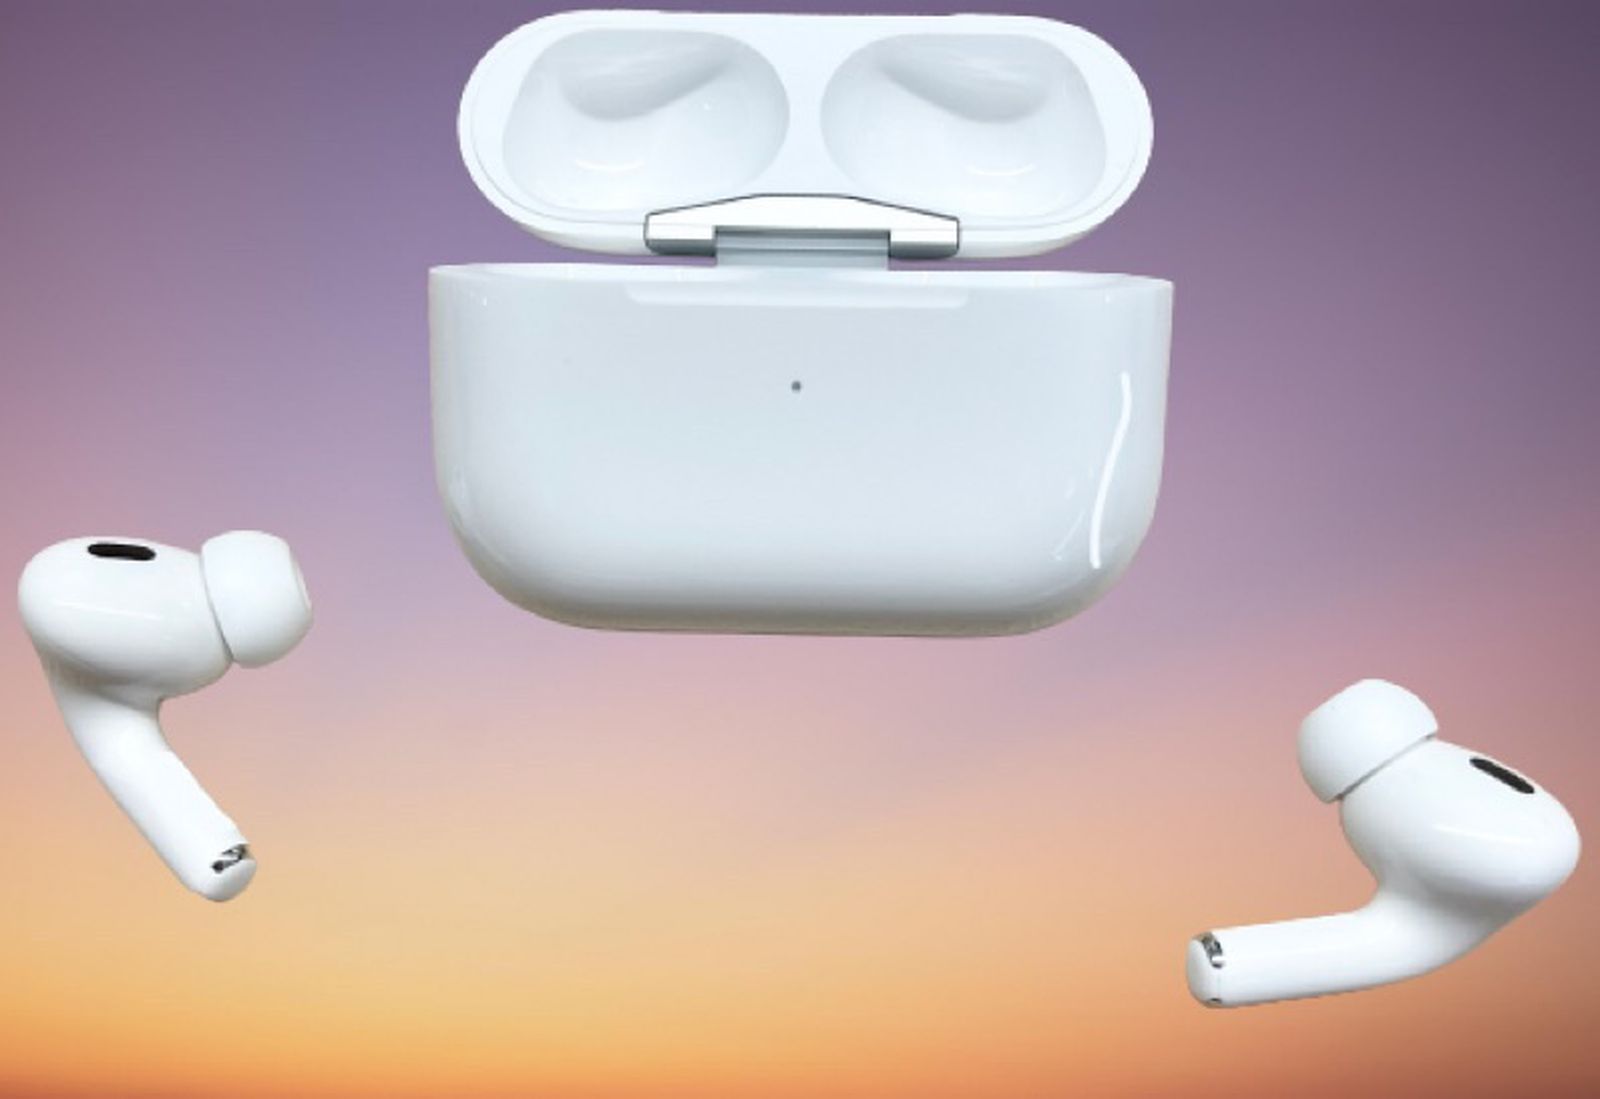 Airpods Pro 2, des changements minimes pour les écouteurs d'Apple ?